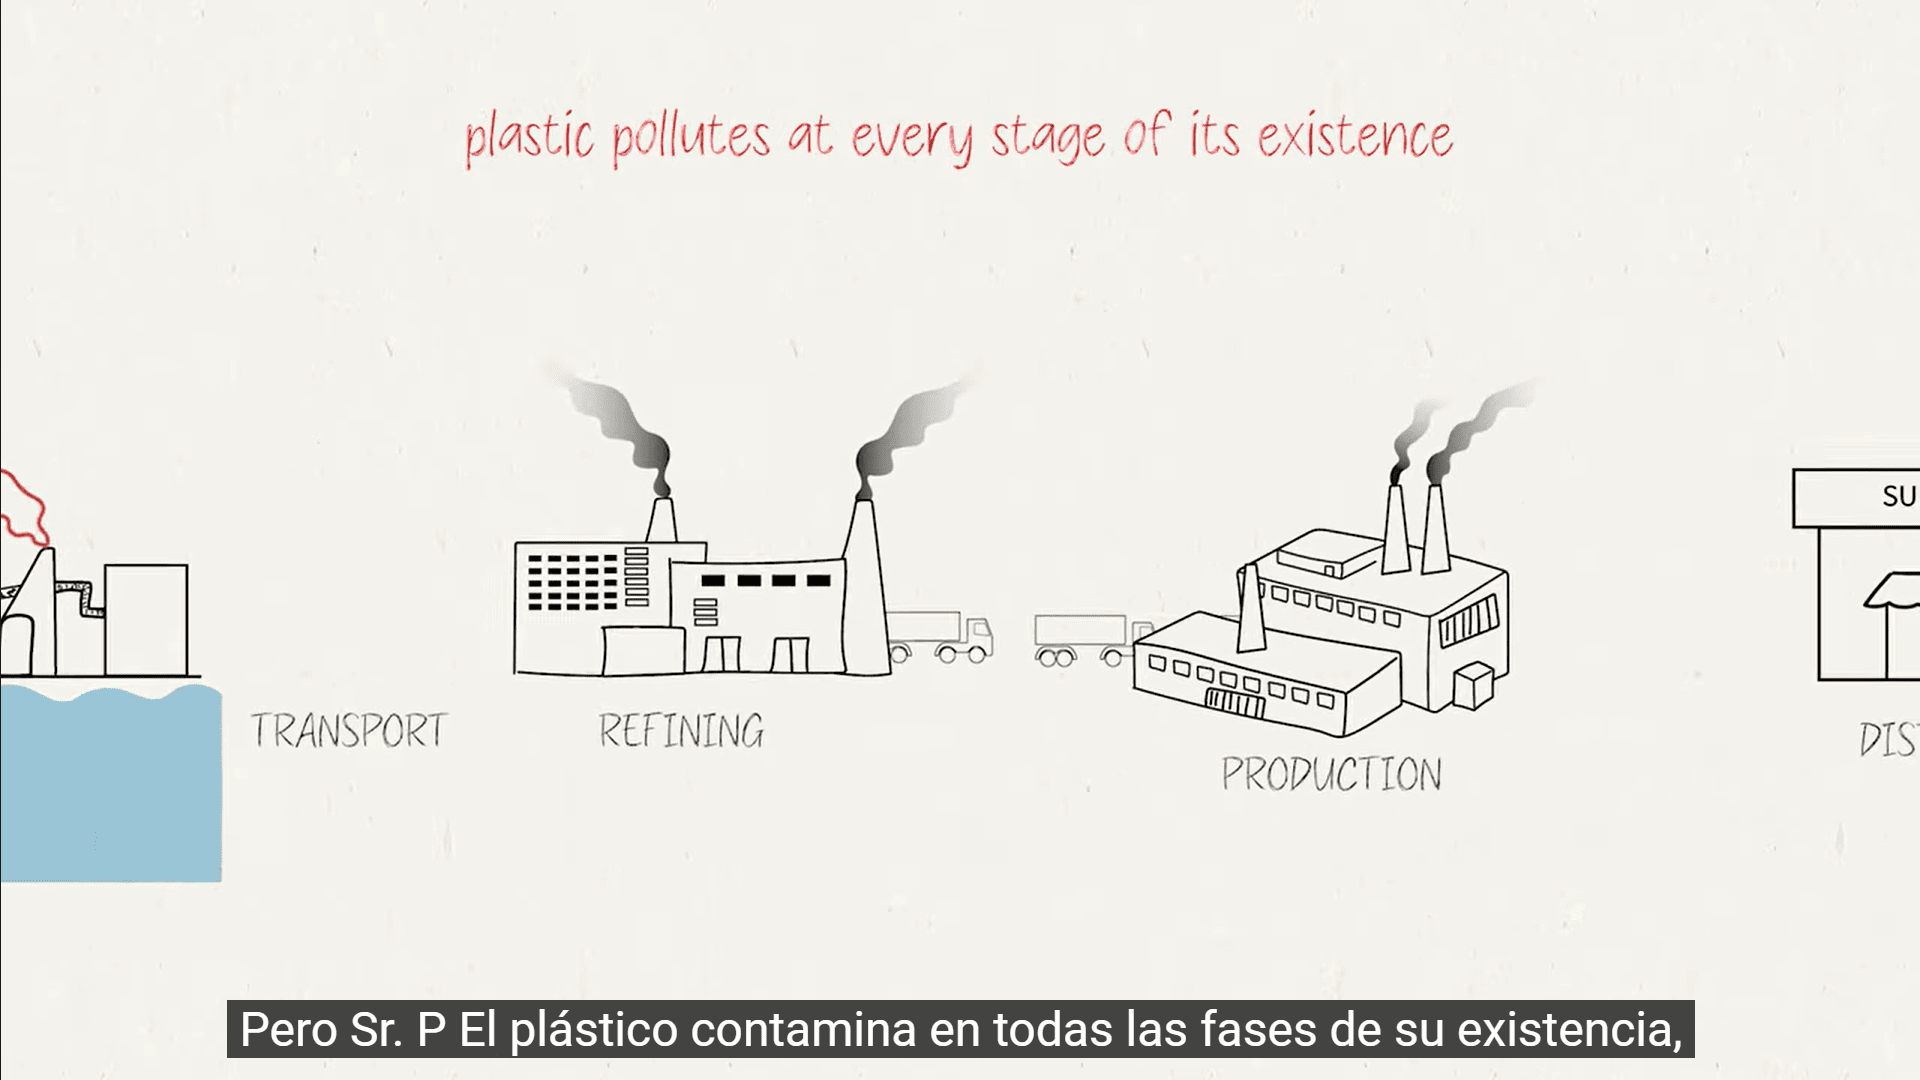 플라스틱 생산의 일부 단계, 특히 운송, 정제 및 생산의 스케치. 화면의 텍스트: 플라스틱은 존재의 모든 단계에서 오염됩니다. 엘 플라스틱 오염 en todas las fases de su exencia